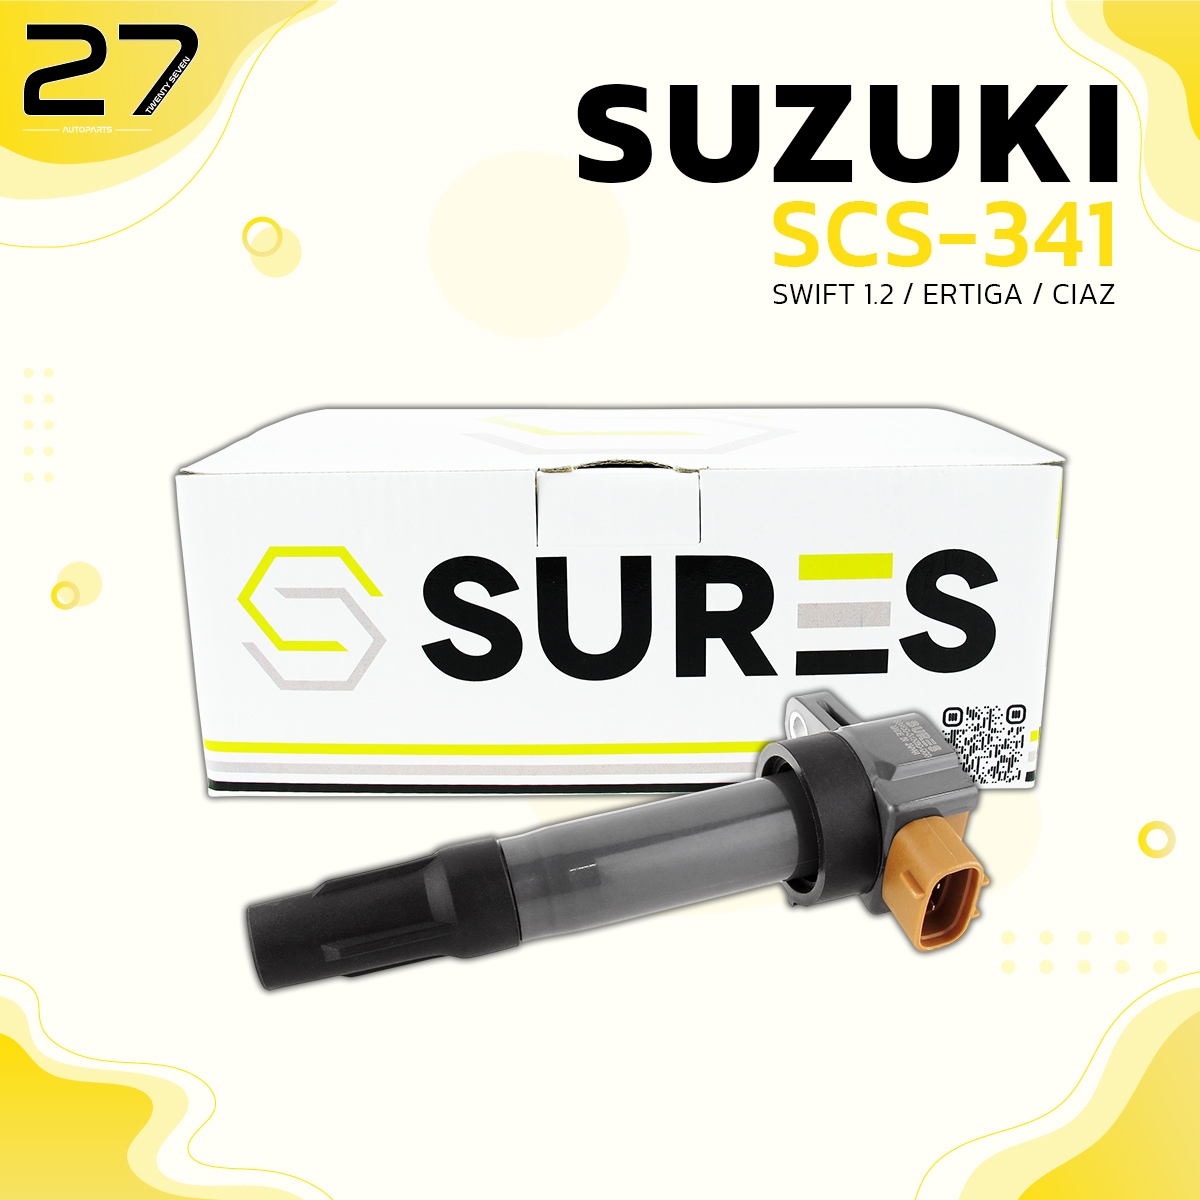 คอล์ยจุดระเบิด SURES - SUZUKI SWIFT 1.2 / ERTIGA / CIAZ  ปี 2012-2017 - รหัส SCS-341 - MADE IN JAPAN